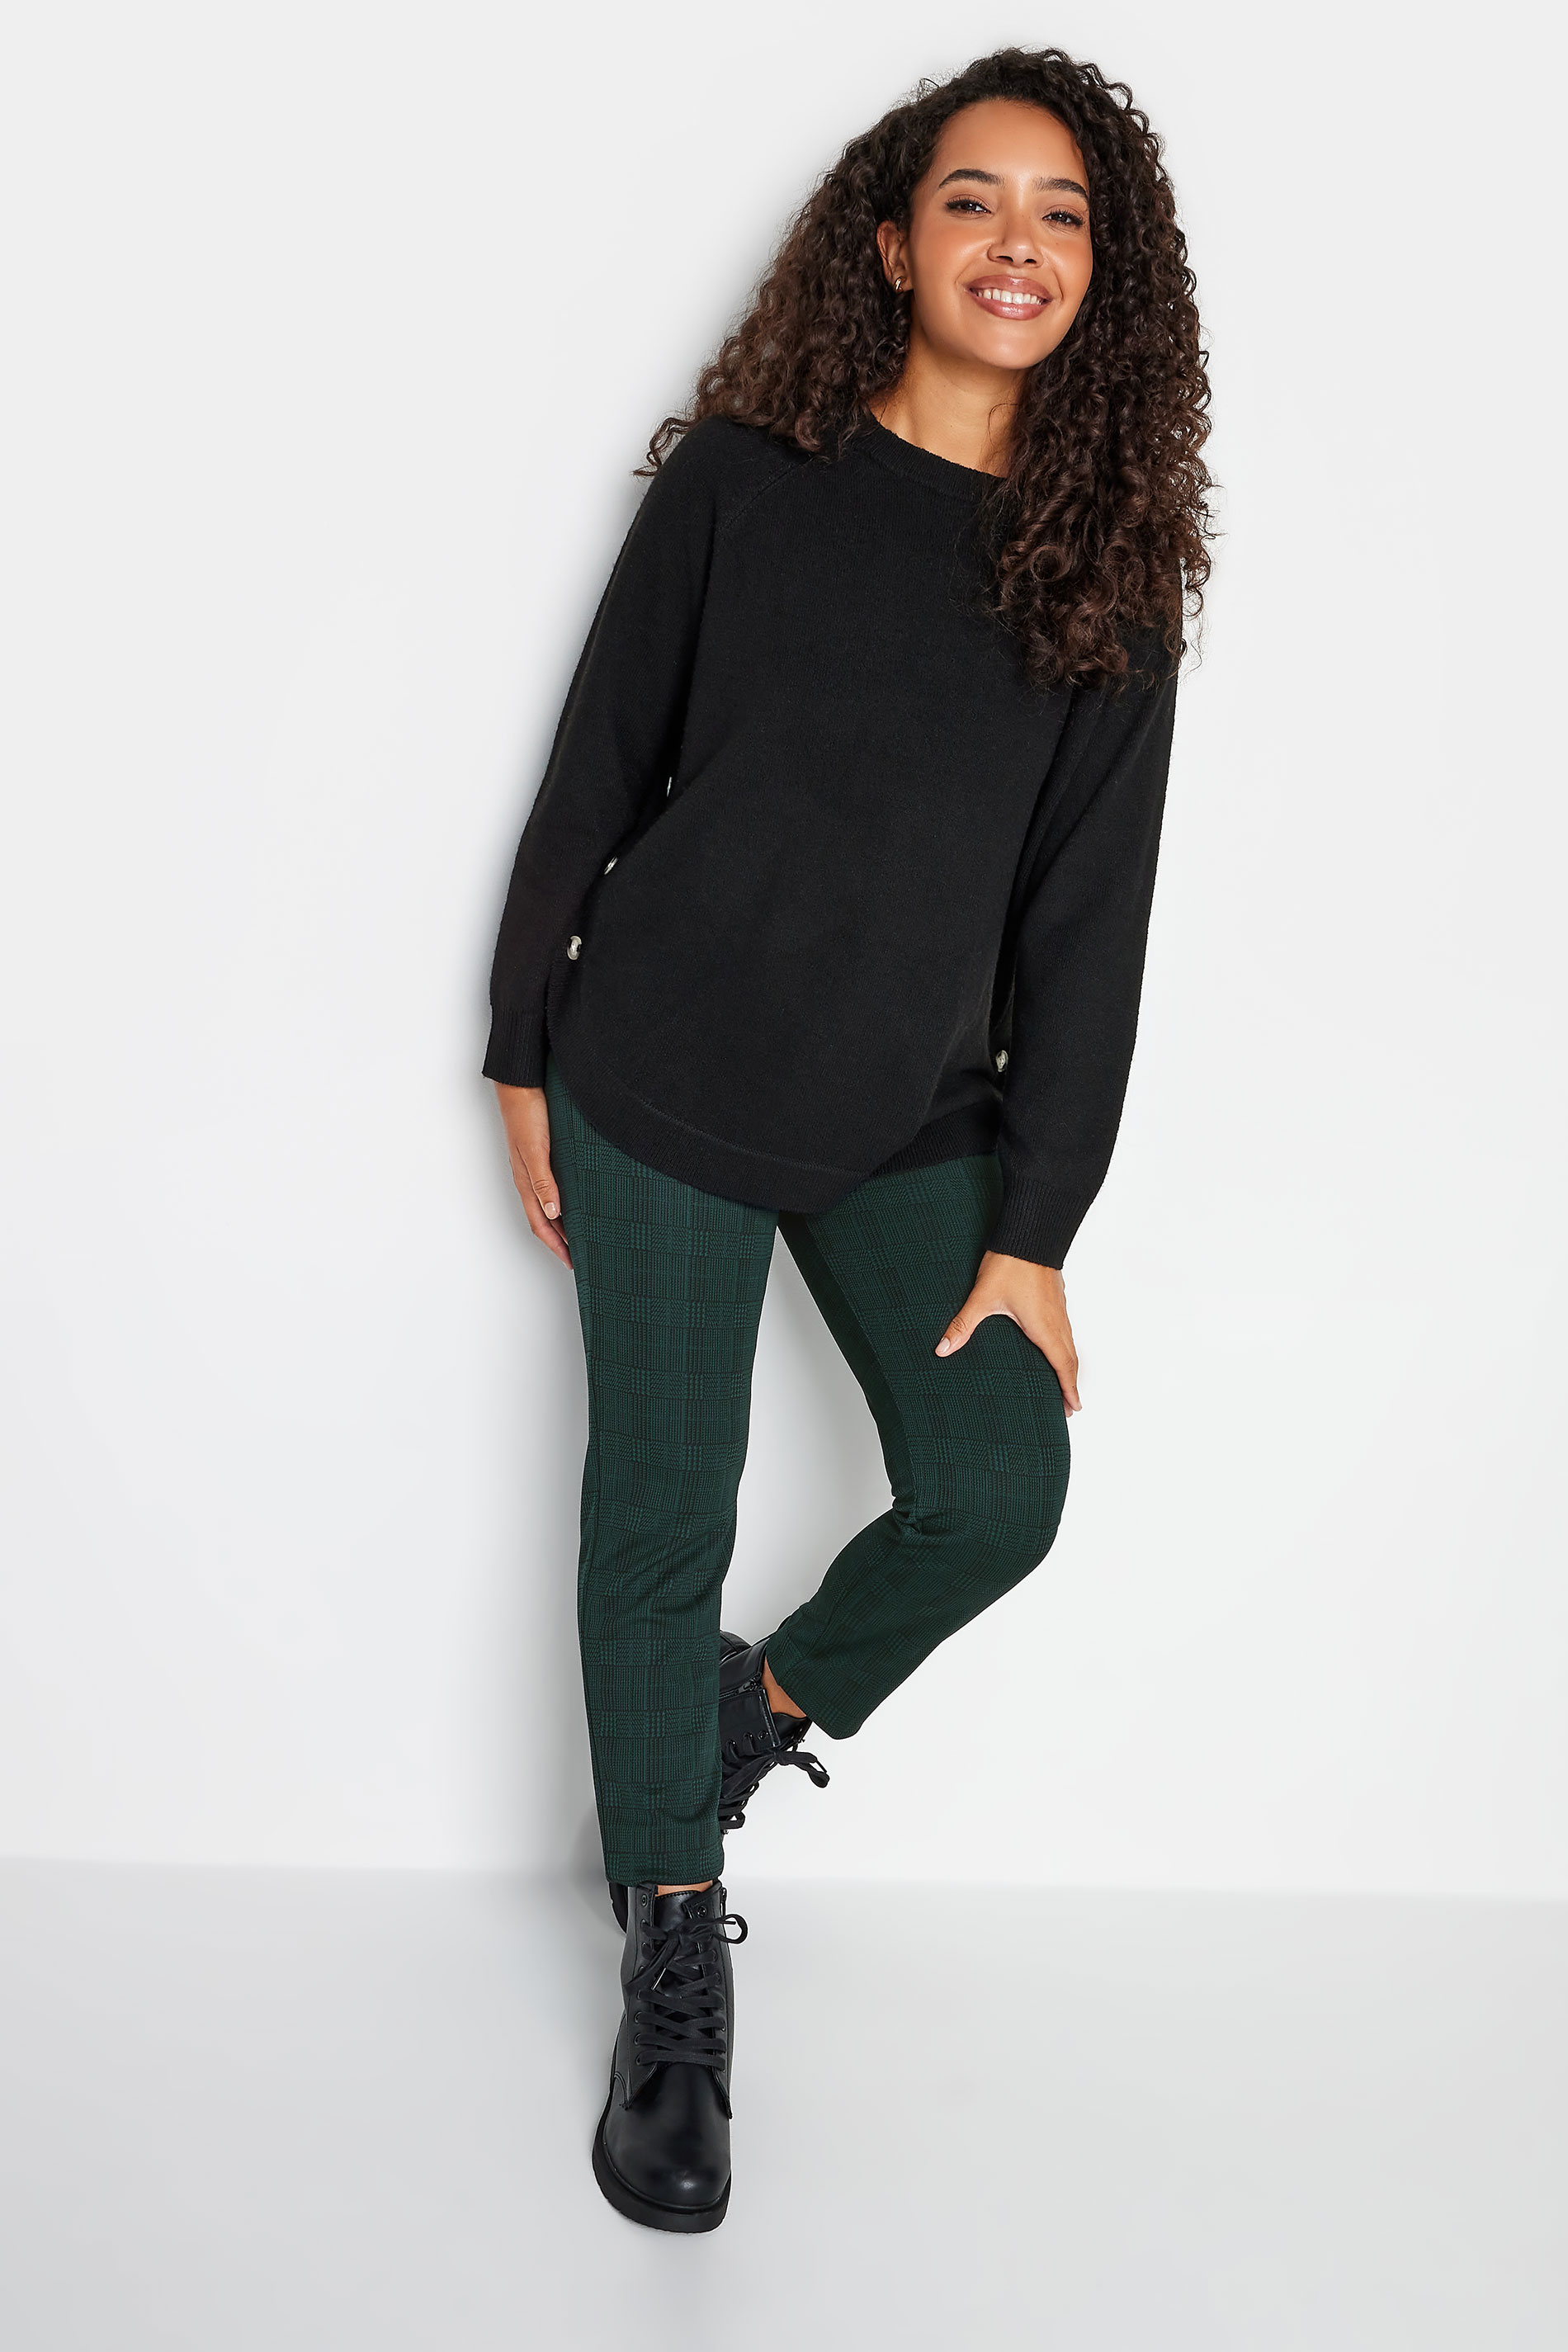 M&Co Petite Teal Green Check Print Slim Leg Trousers | M&Co 2